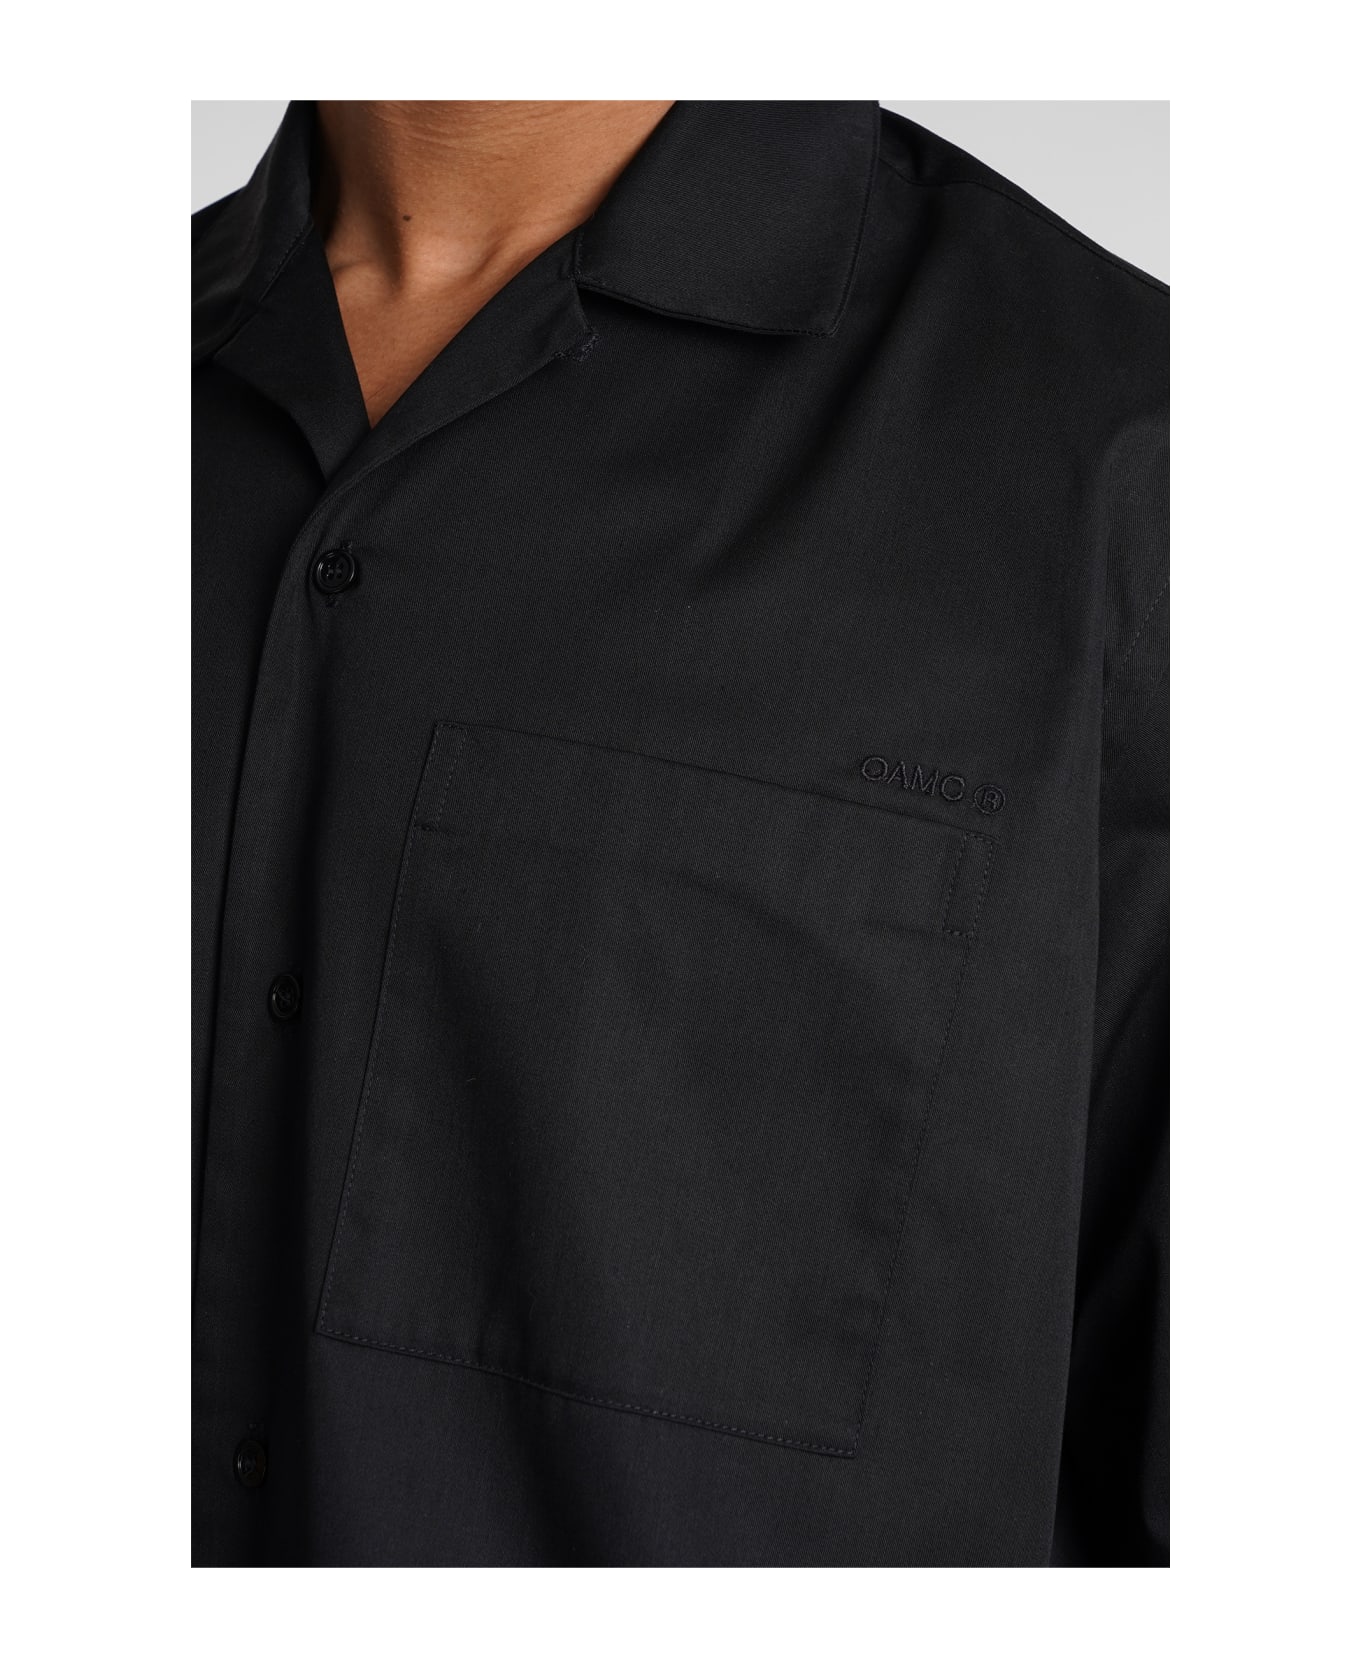 OAMC Shirt In Black Polyester - black